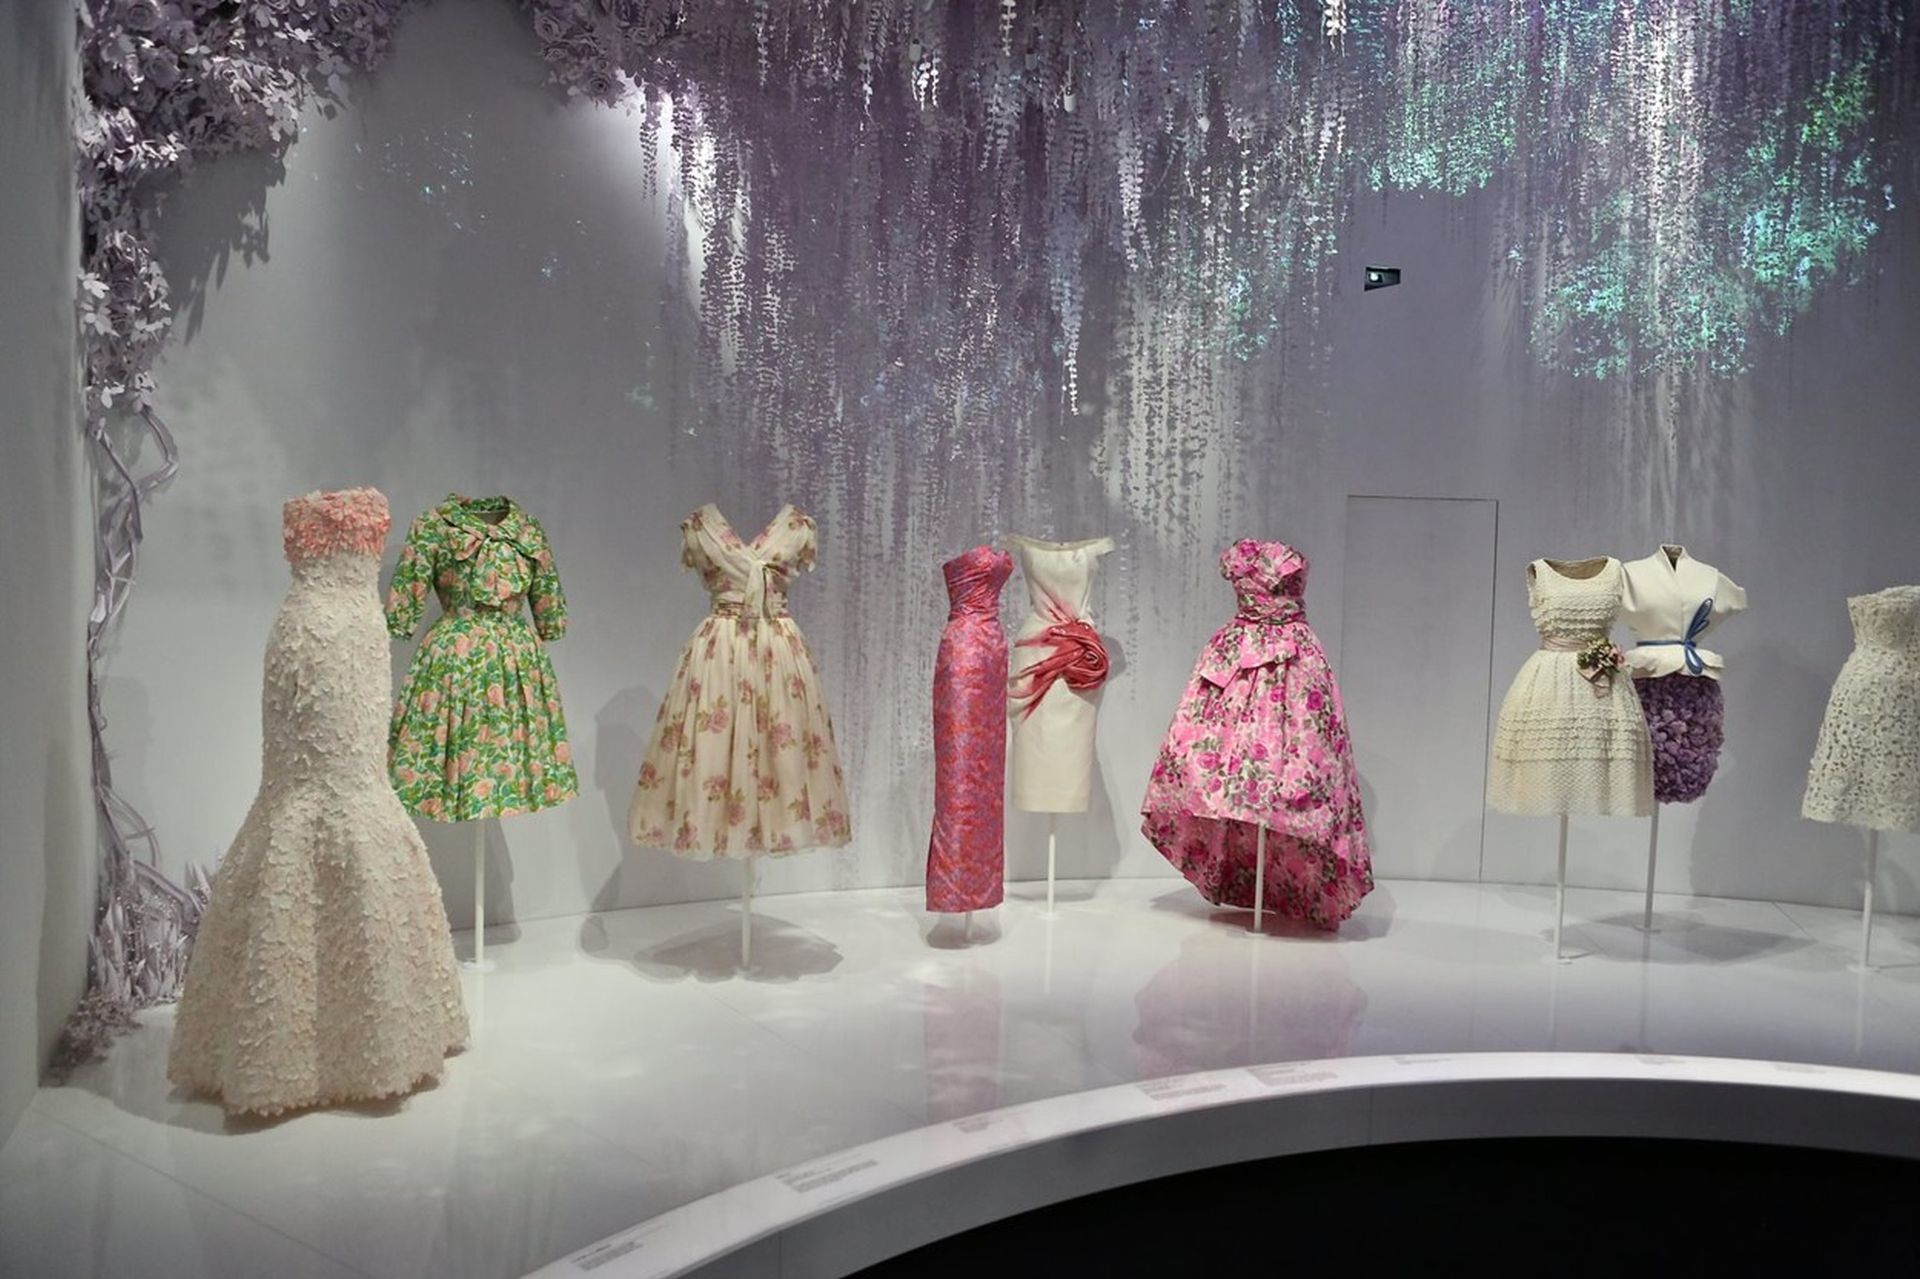 A Dior kiállításon a divatház történetének minden ikonikus ruhája, kiegészítője bemtuatásra került.